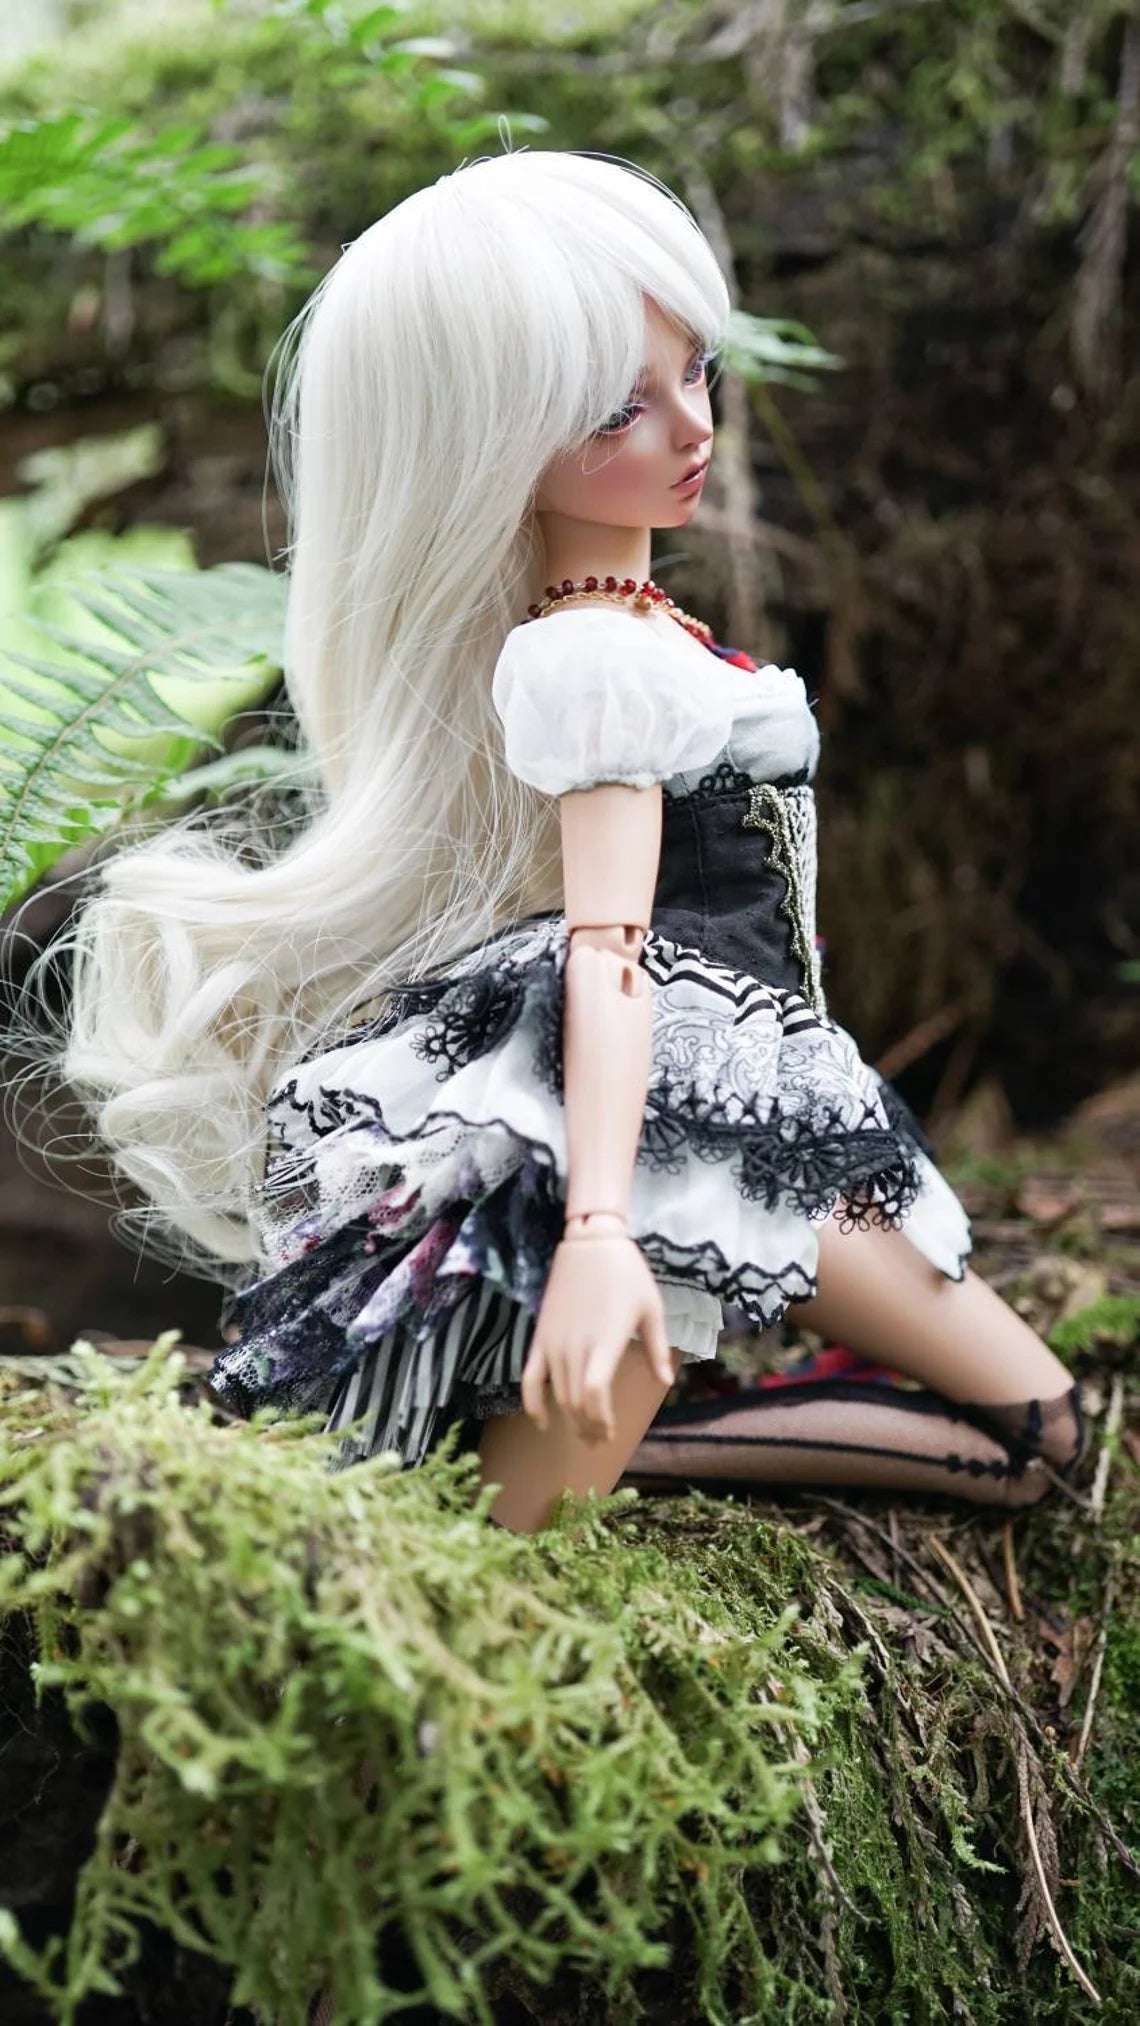 Custom doll Wig for Minifee 1/4 BJD Dolls- "TAN CAPS" 6-7" head size of Bjd, msd, Boneka ,Fairyland Minifee dolls light blonde natural